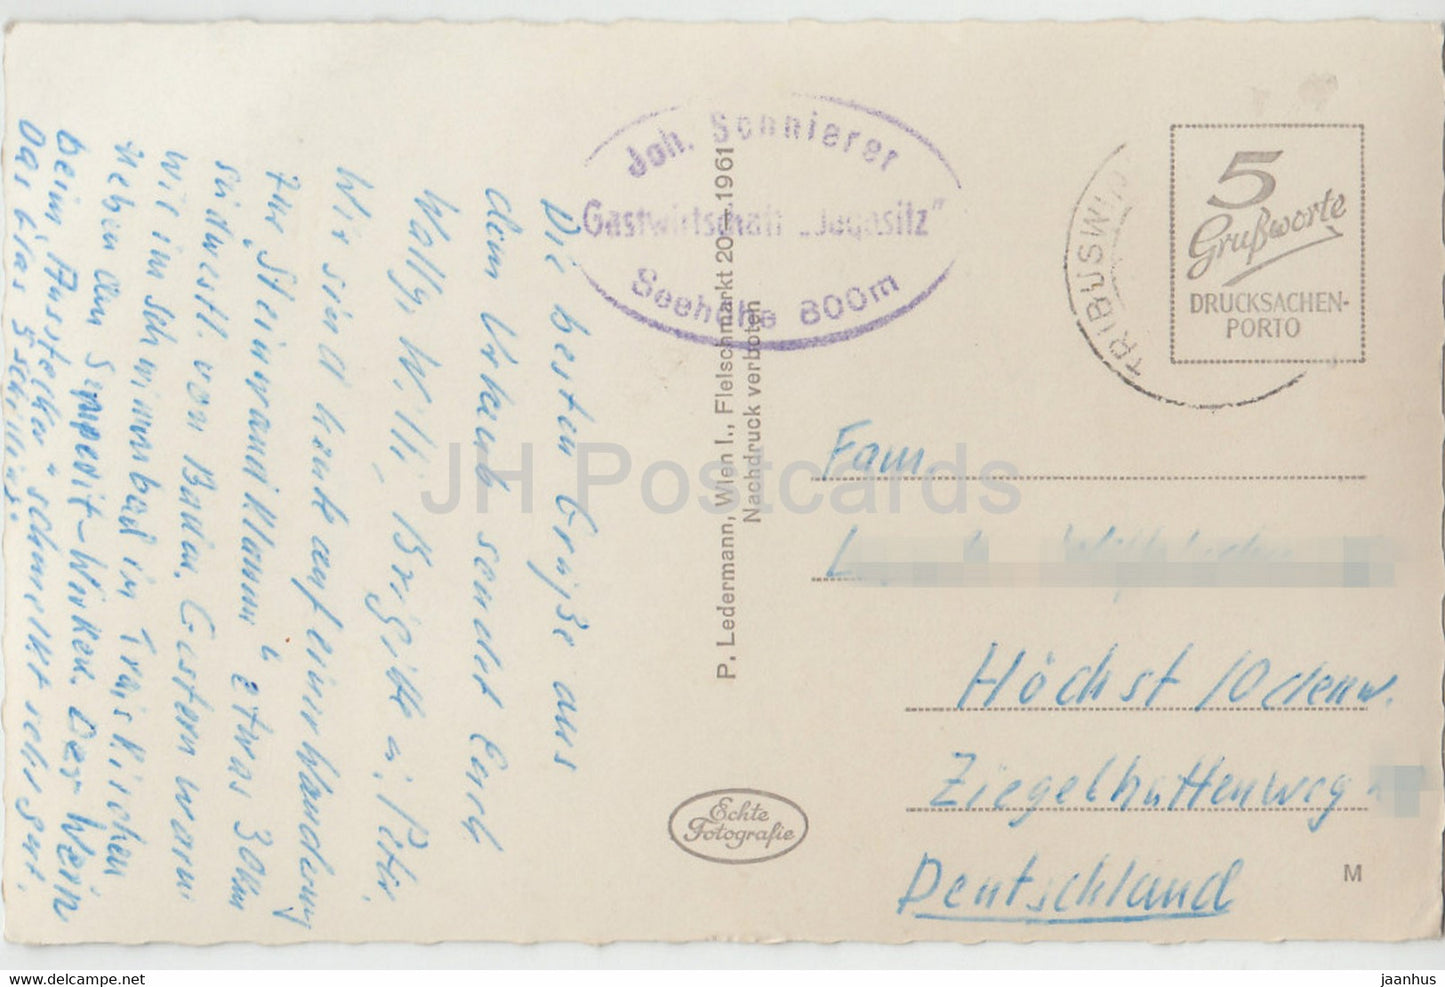 Steinwandklamm - alte Postkarte - Österreich - gebraucht